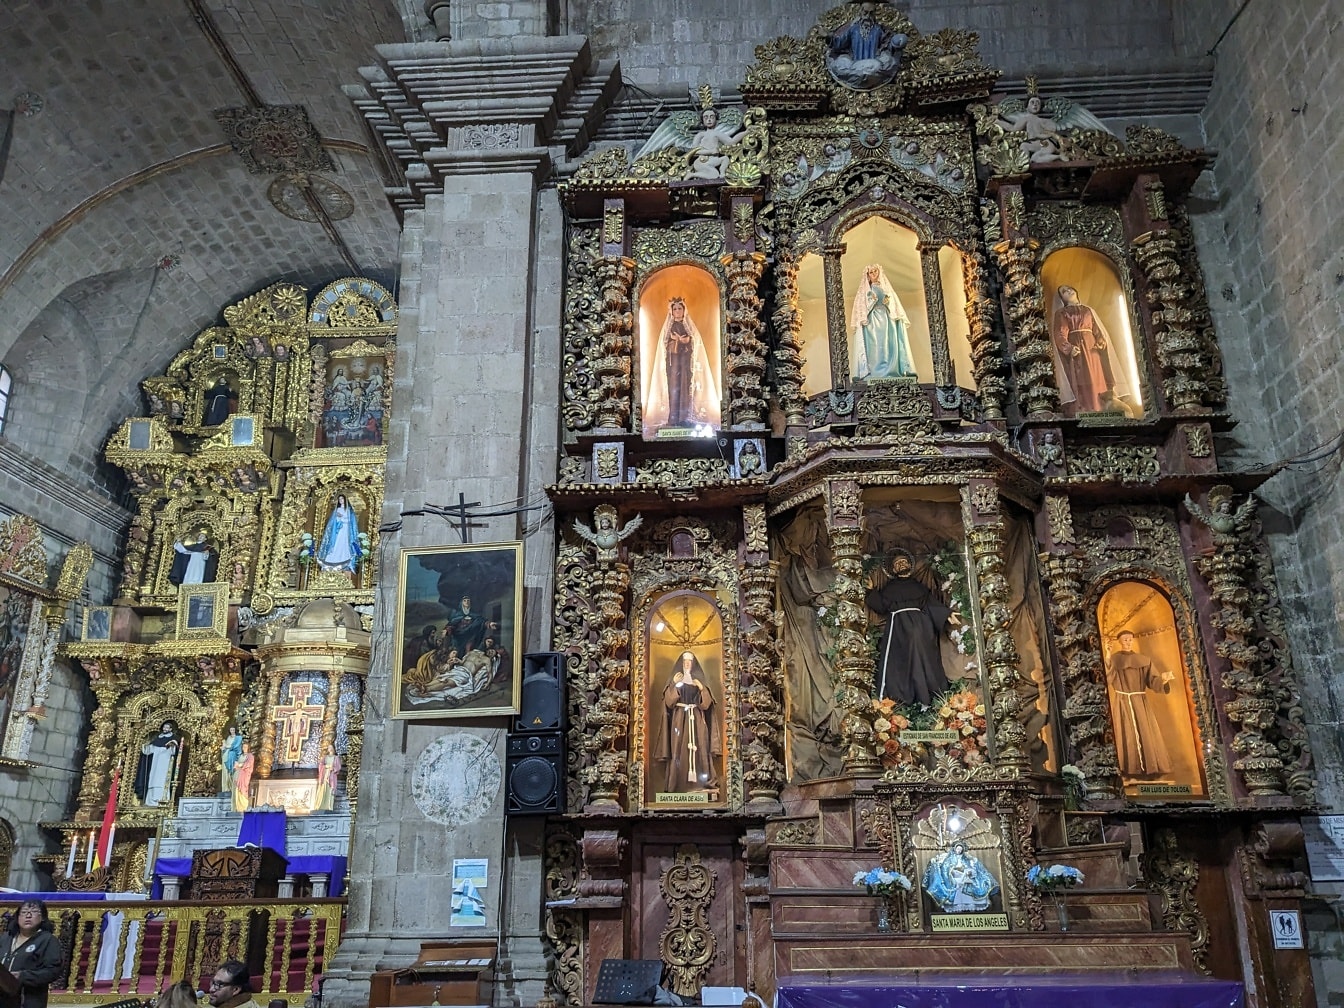 Innenraum der Kirche mit geschmücktem Altar mit Heiligenstatuen im traditionellen lateinamerikanischen Stil